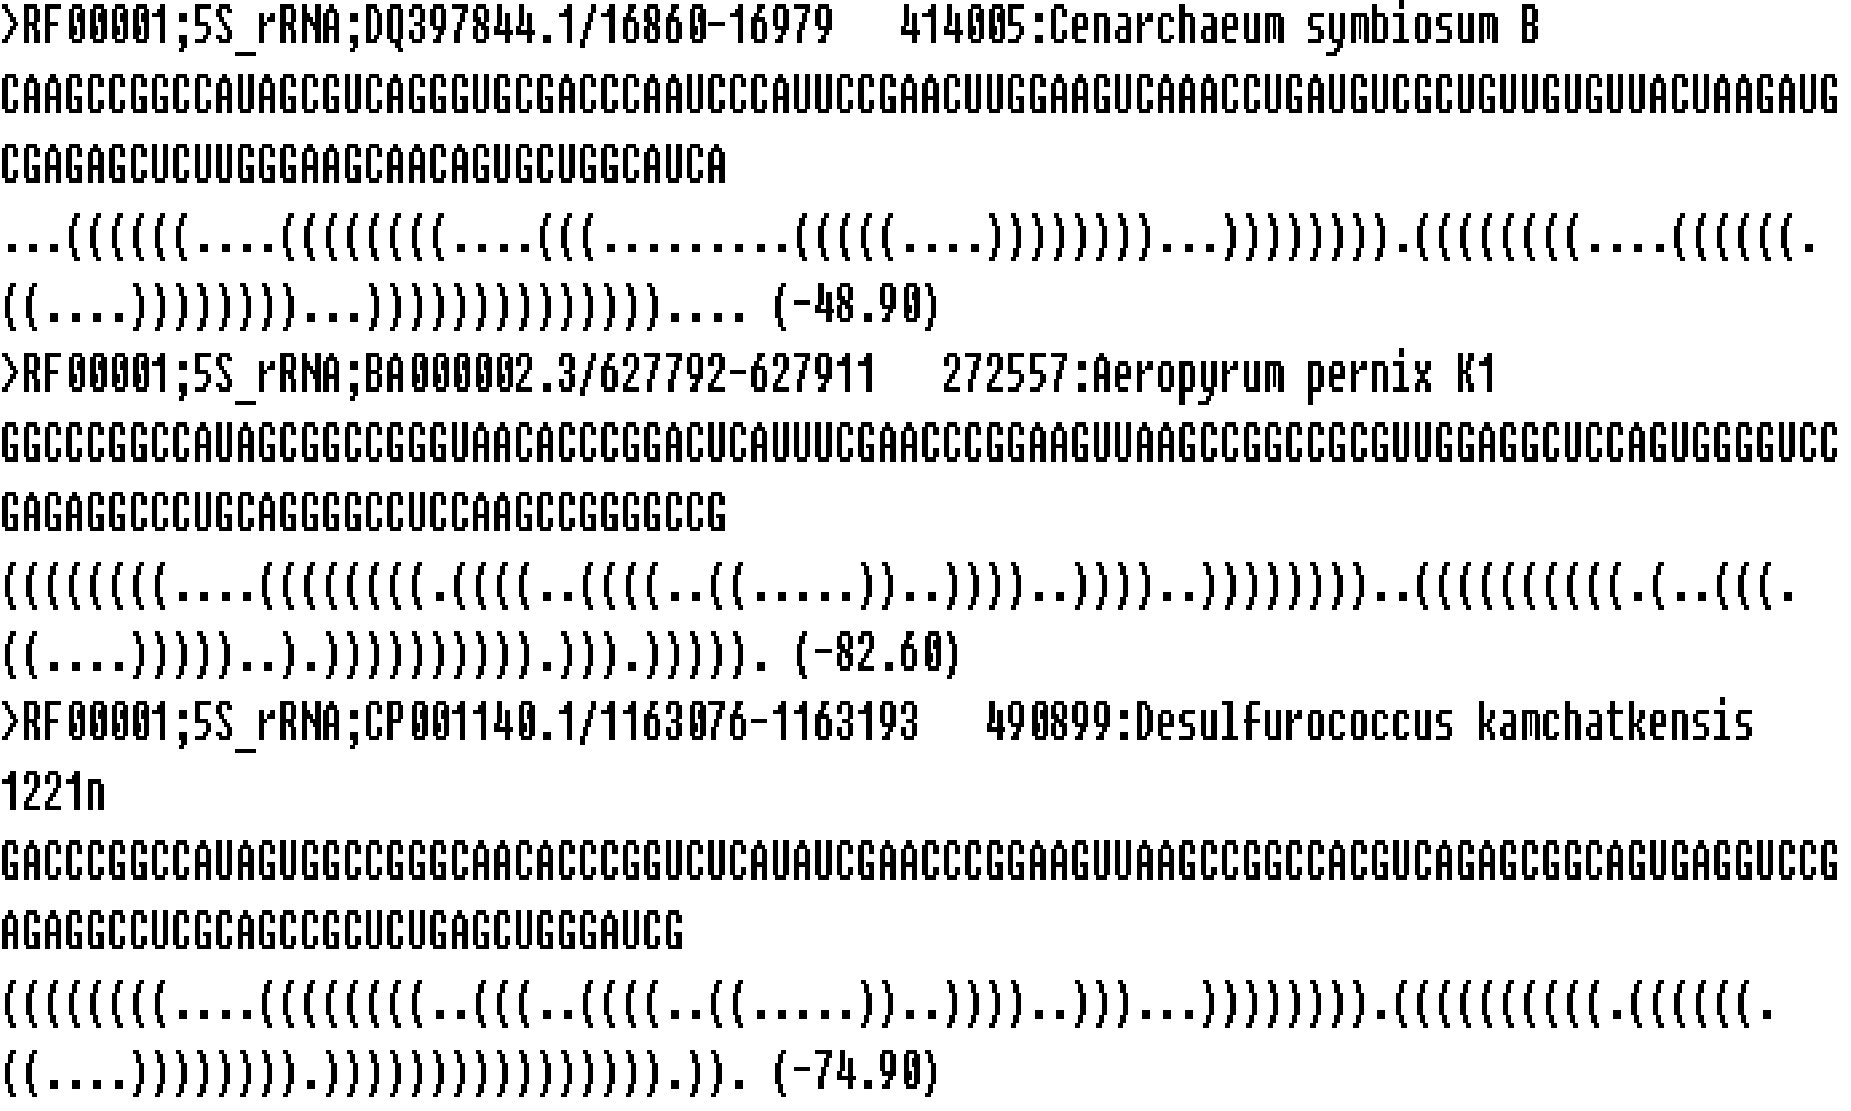 [1]吴建英,王淑琴.RNA二级结构点括号图与CT文件表示法的相互转换算法研究[J].天津师范大学学报(自然科学版),2012,32(04):32-36.